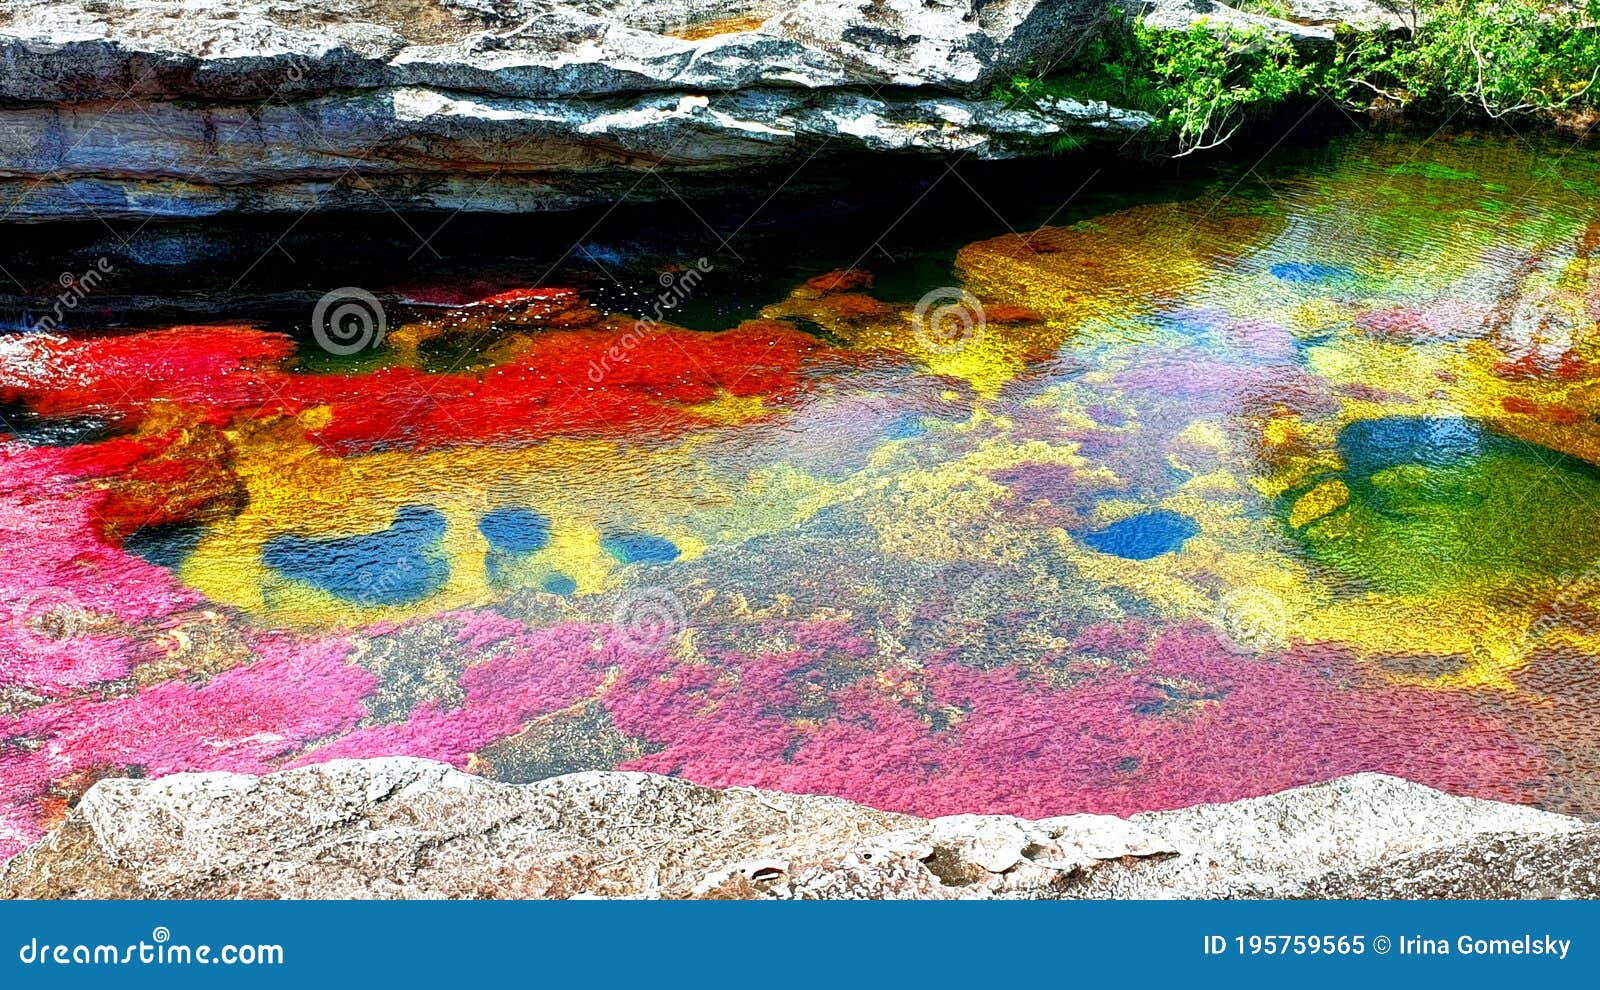 the most picturesque multi colored river in the world, cano cristales, serrania de la macarena national park, colombia